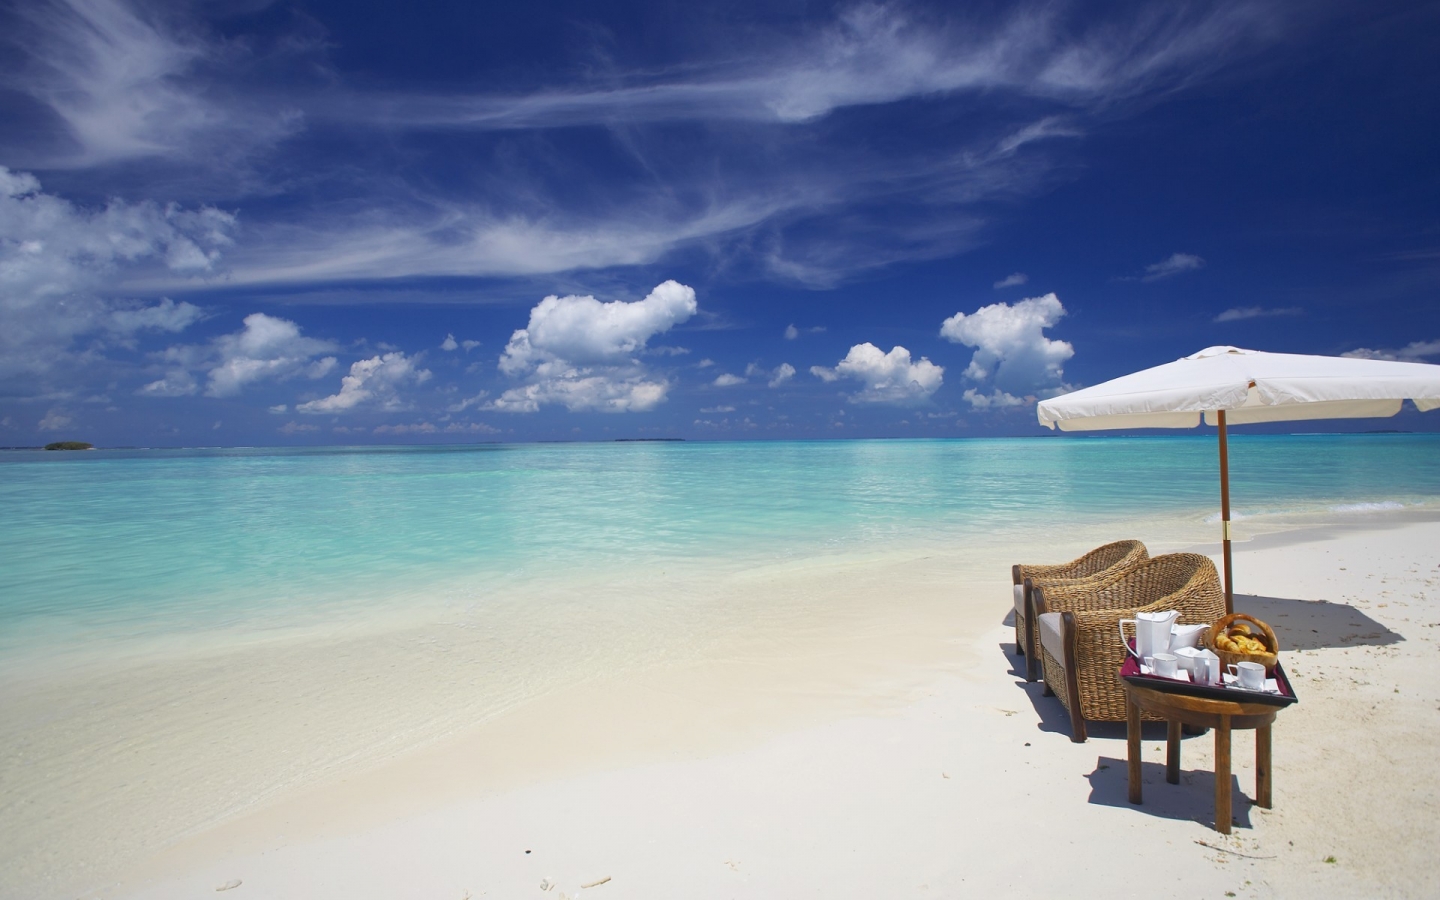 Private Beach Maldives for 1440 x 900 widescreen resolution